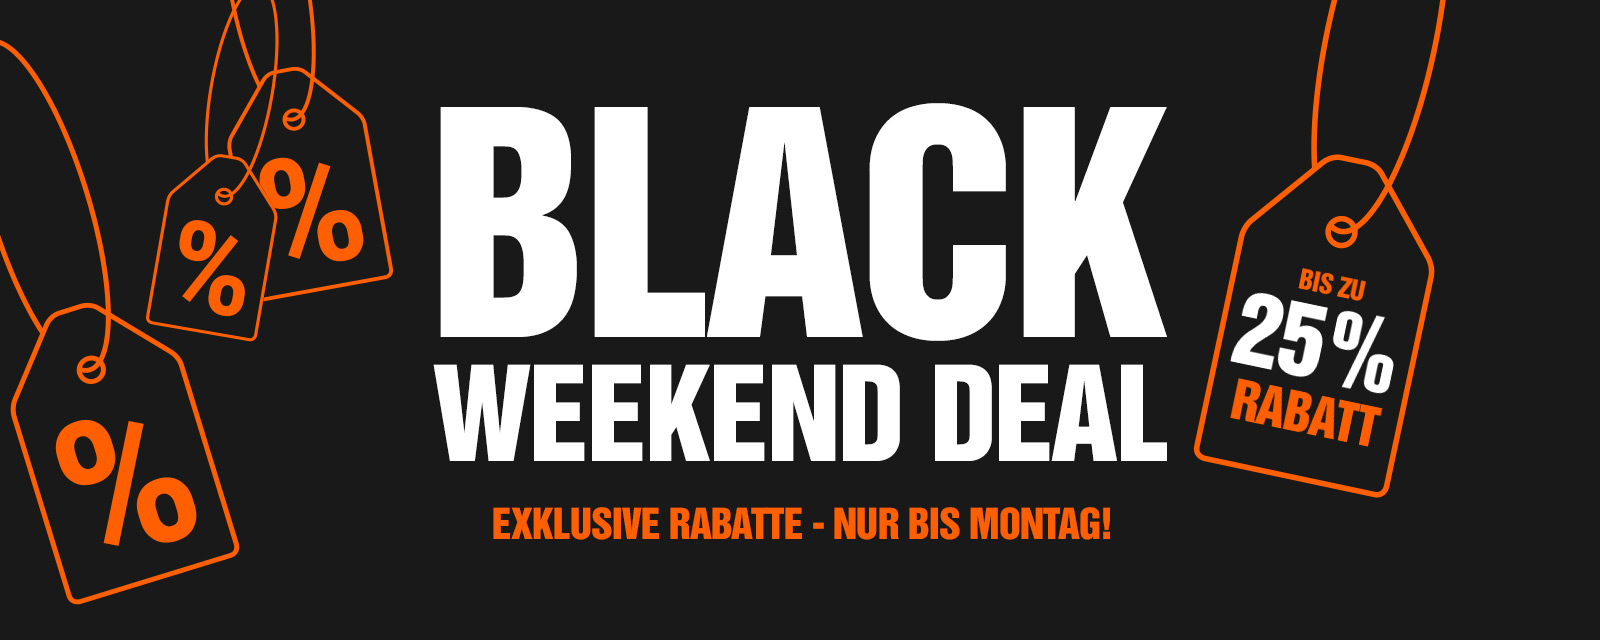 Black Friday Mietwagen